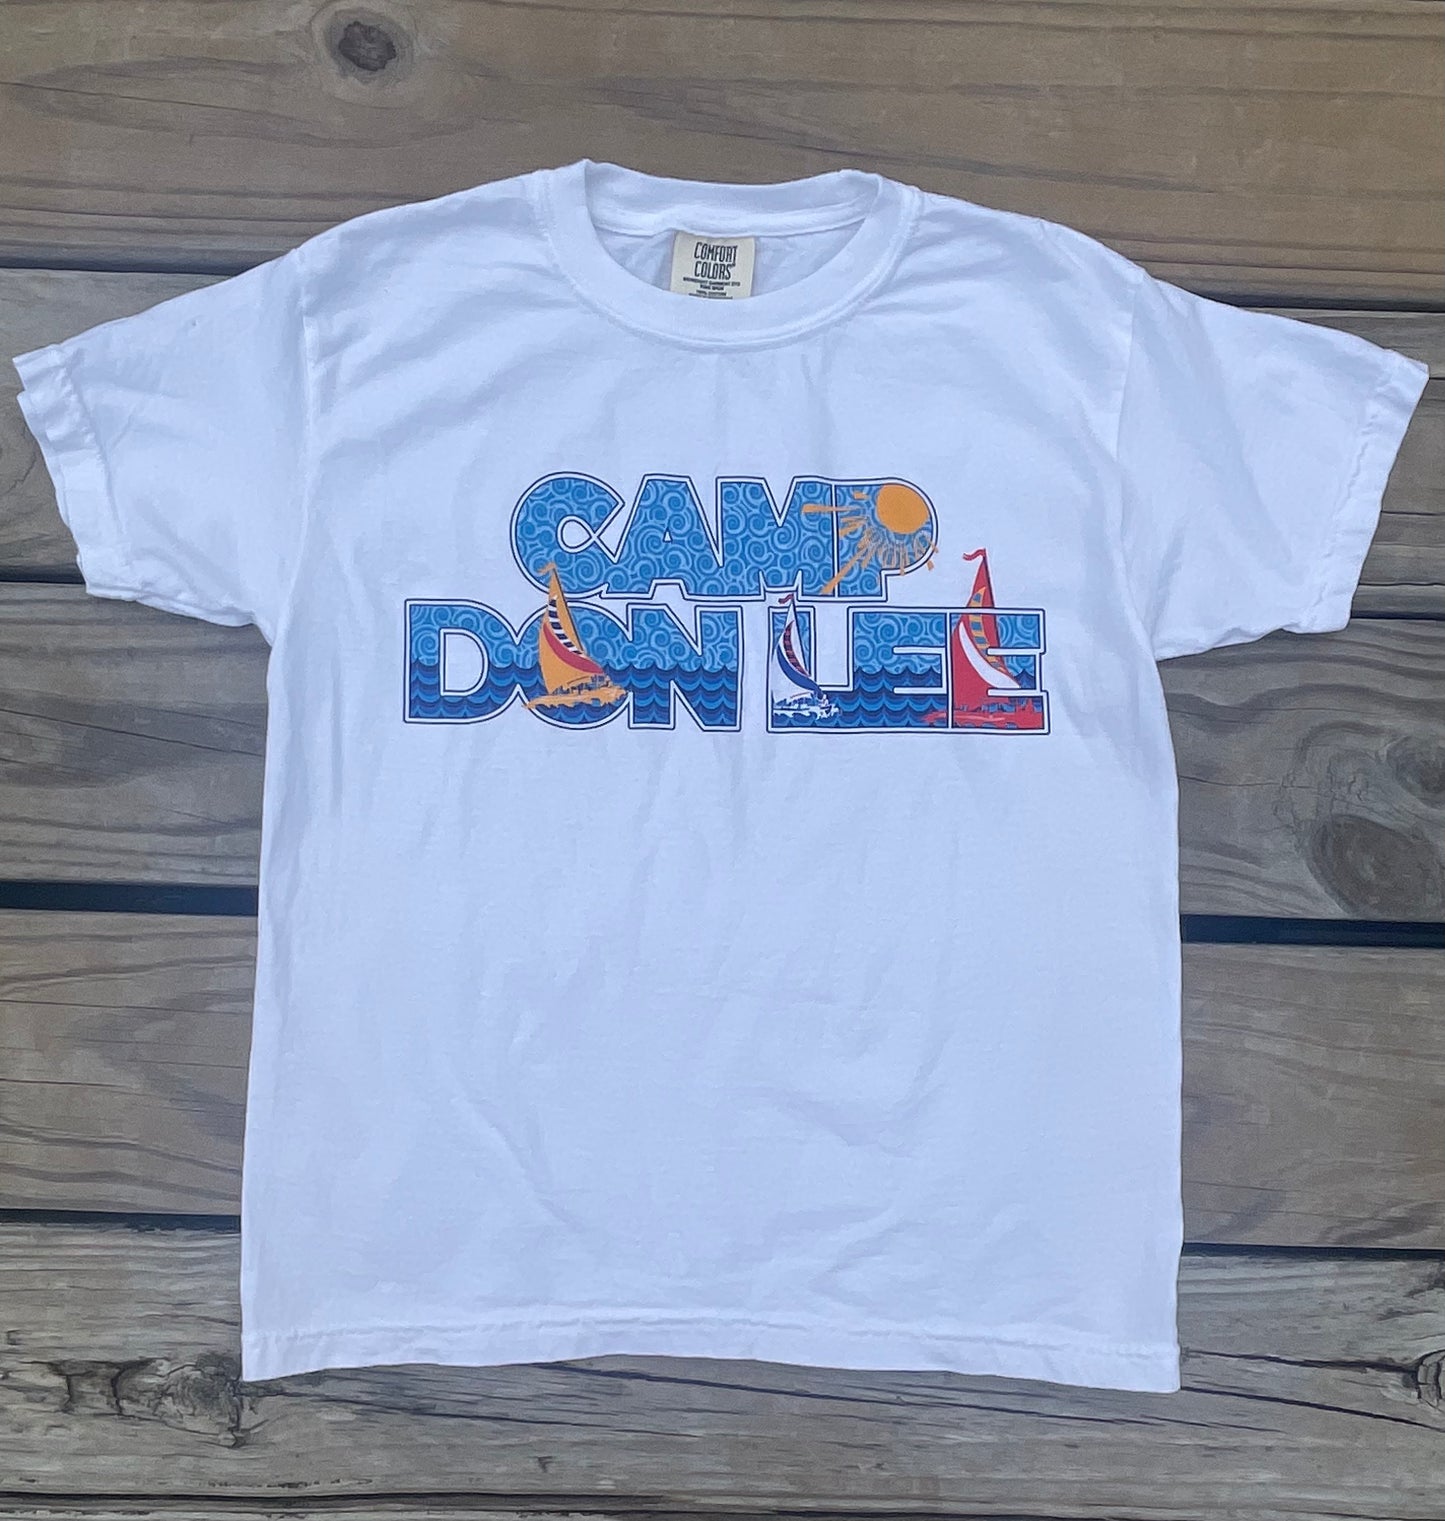 CDL - Bubble letters shirt (comfort colors)